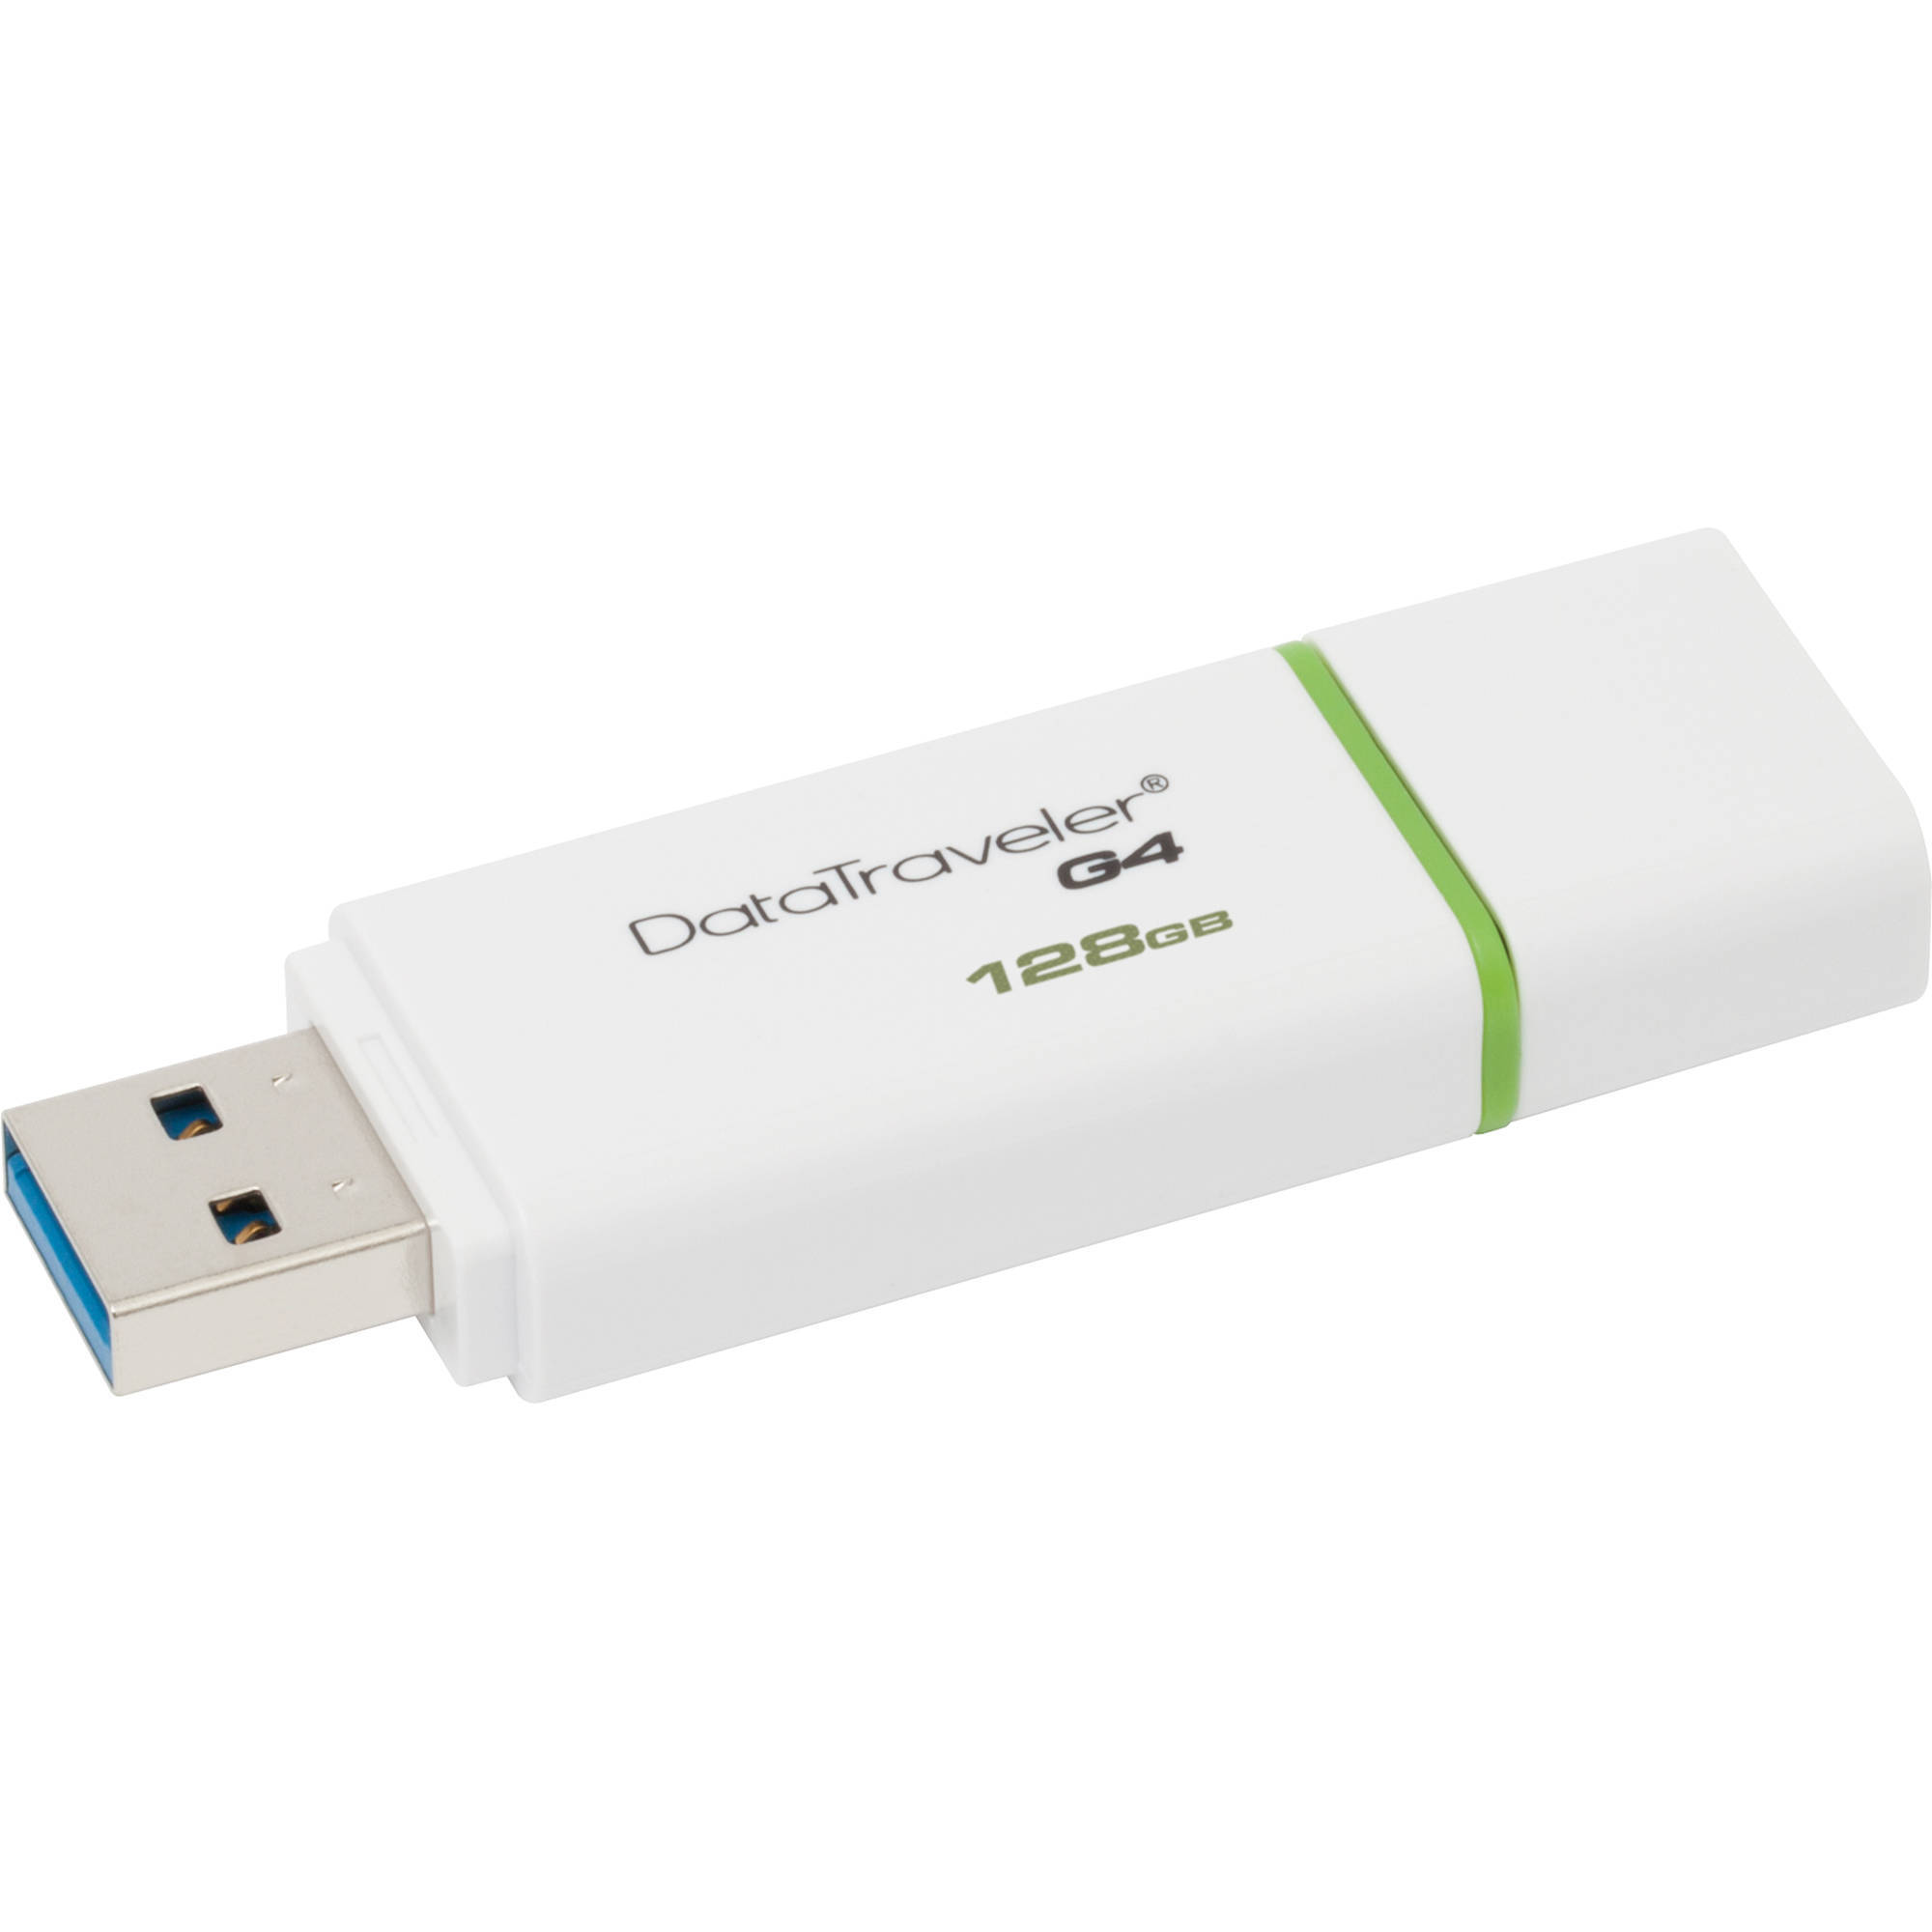 USB Kingston DTIG4 128GB - USB 3.0